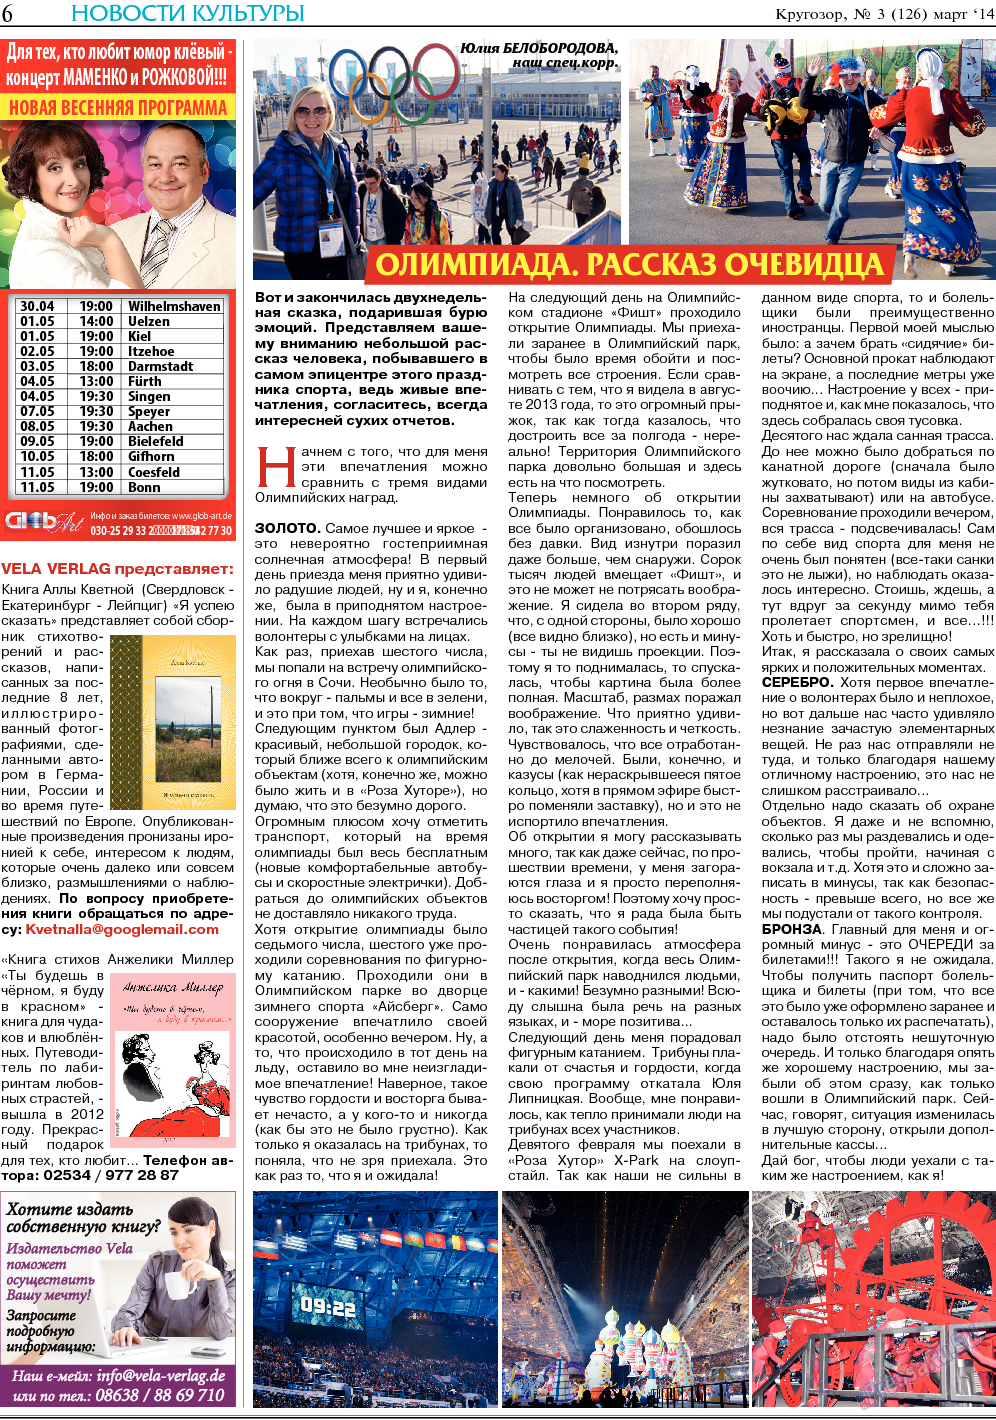 Кругозор, газета. 2014 №3 стр.6